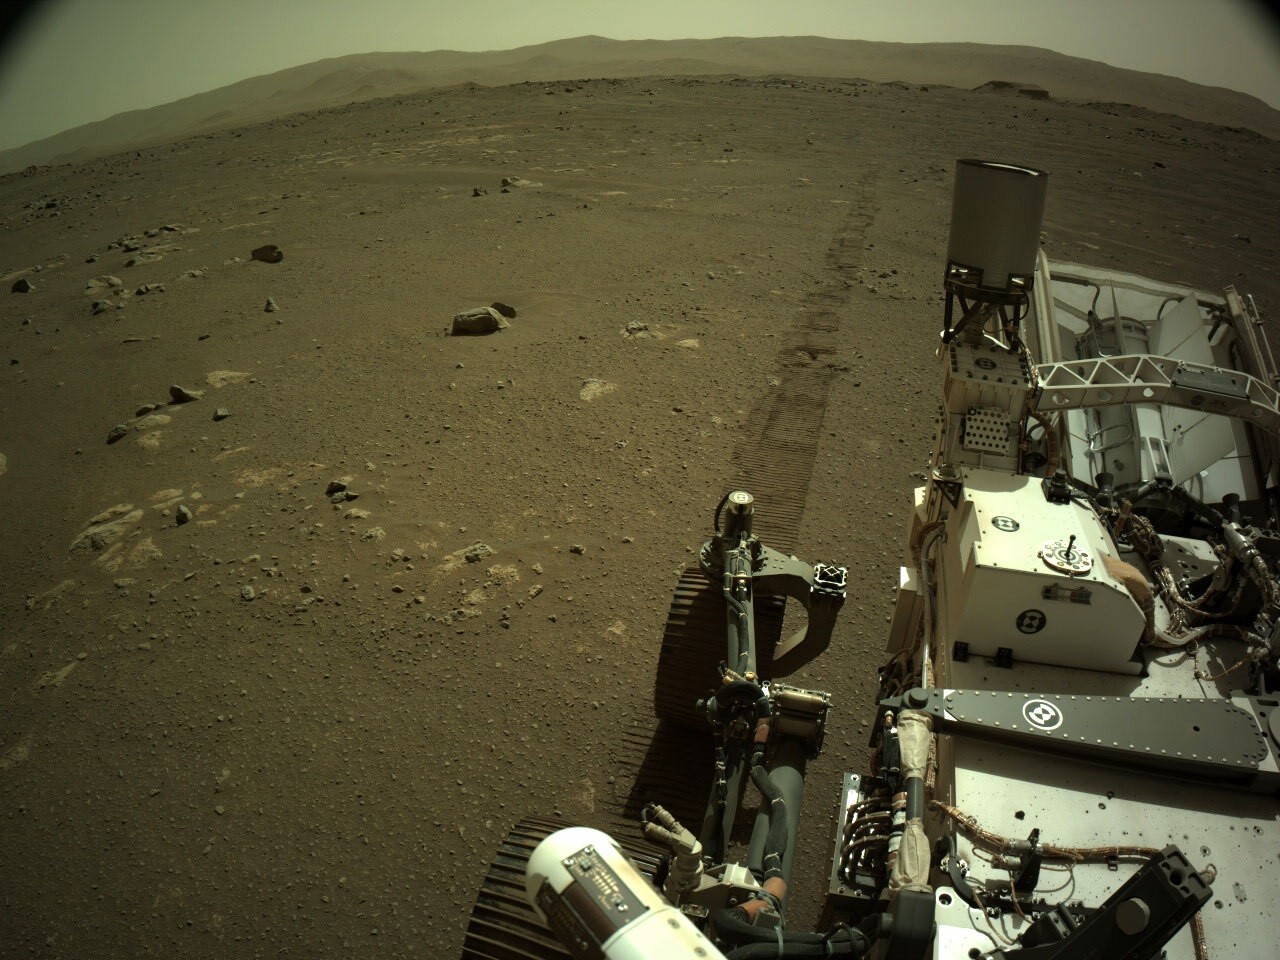 El rover Perseverance de la NASA grabó esta semana un audio de sí mismo circulando sobre la superficie del Planeta Rojo, agregando una dimensión completamente nueva a la exploración de Marte - NASA/JPL-CALTECH
